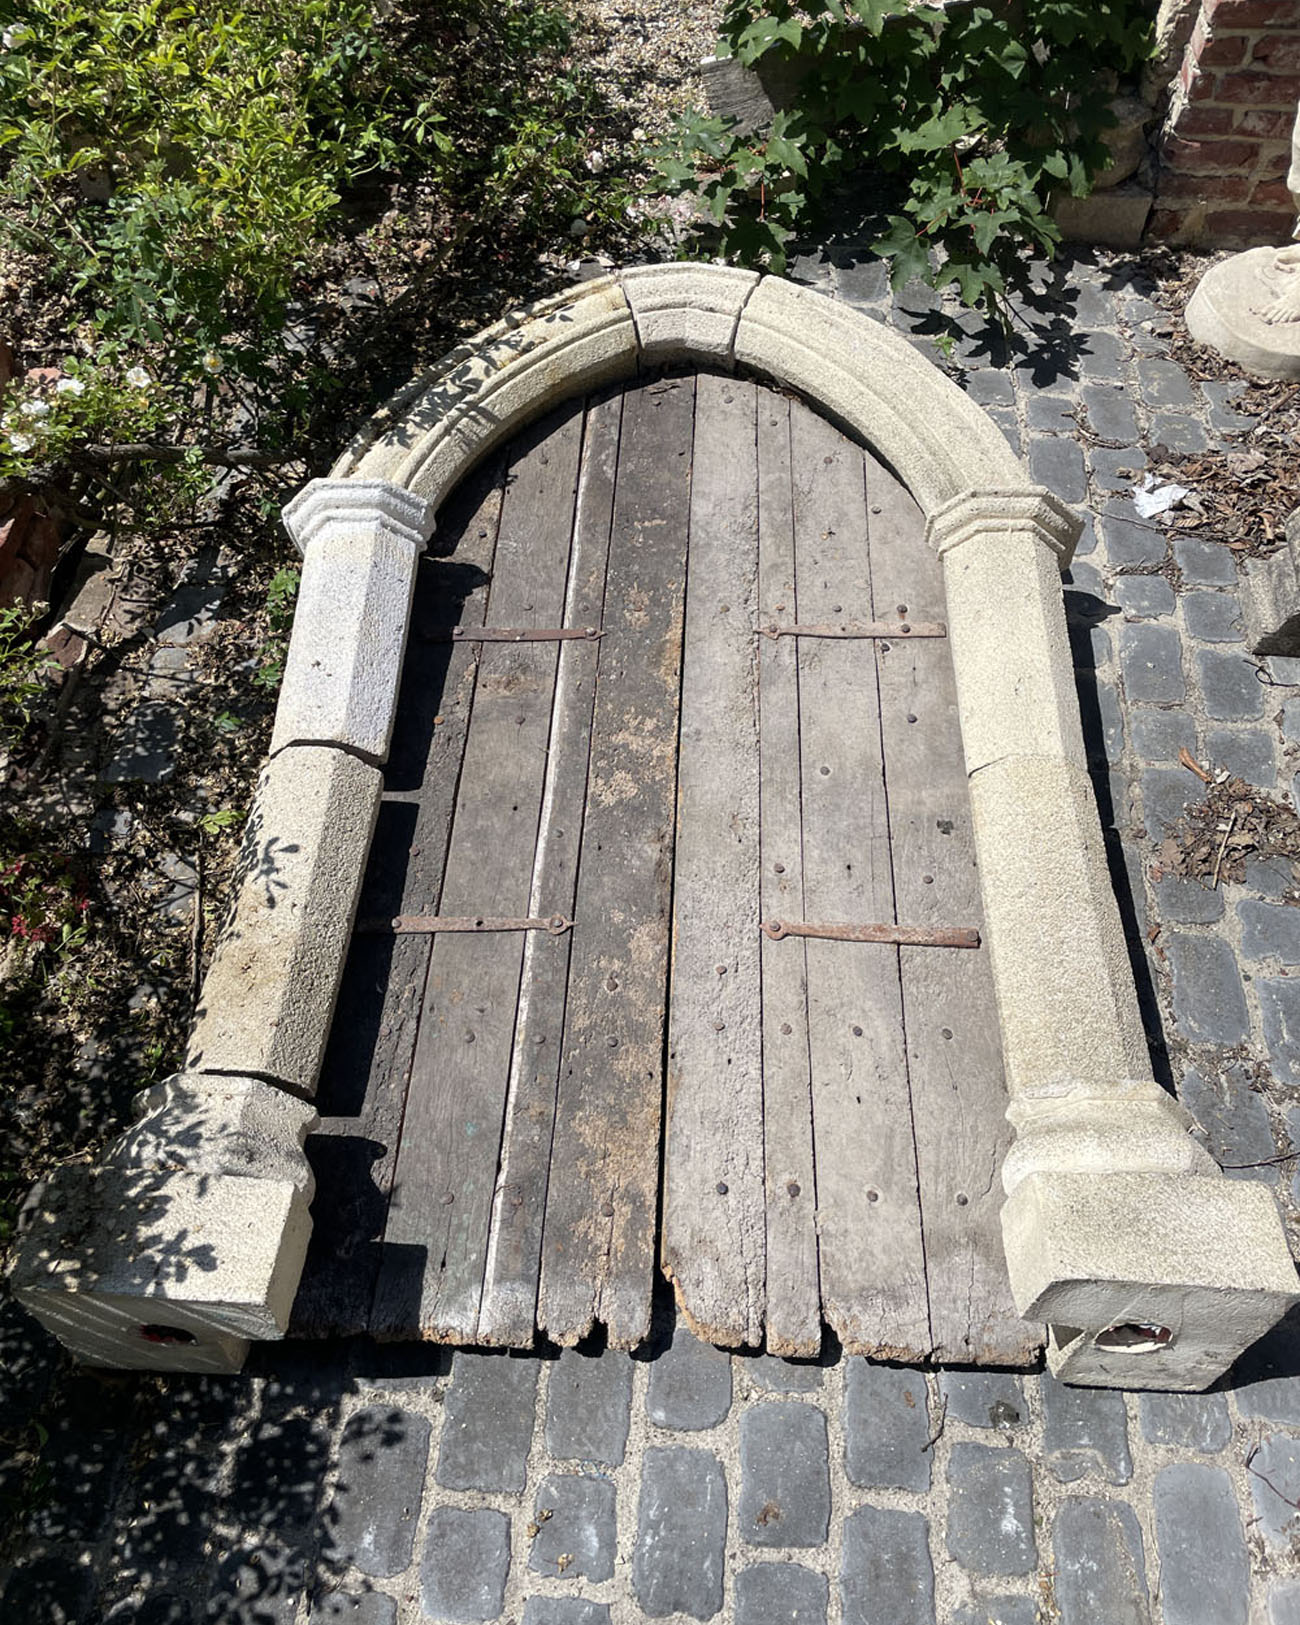 Rebated Gothic Arch & Rustic Double Door